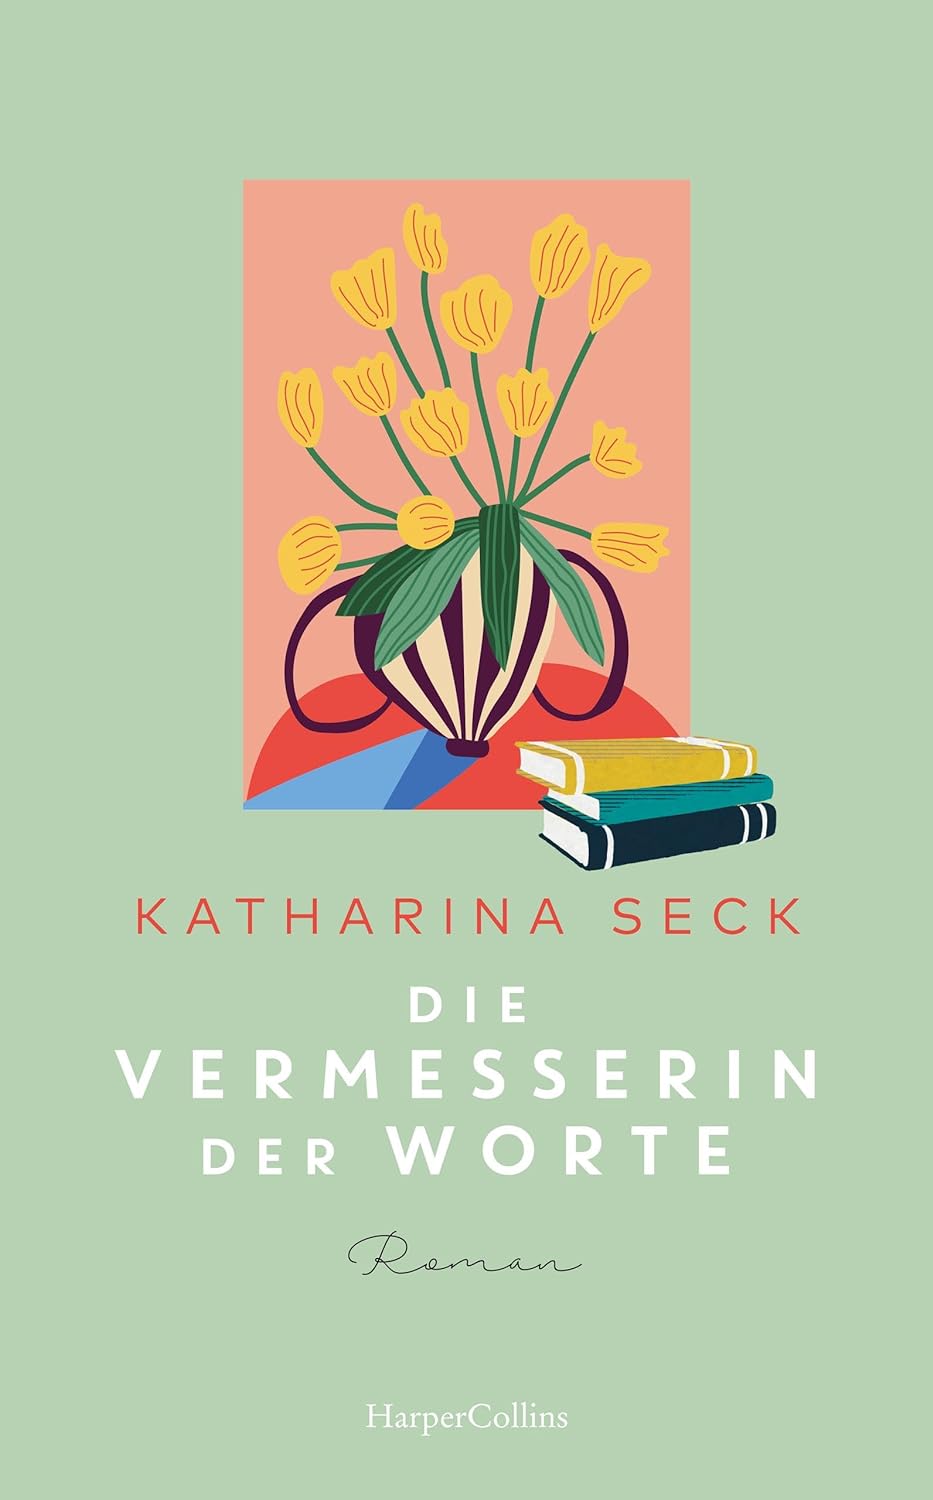 Katharina Seck - Die Vermesserin der Worte